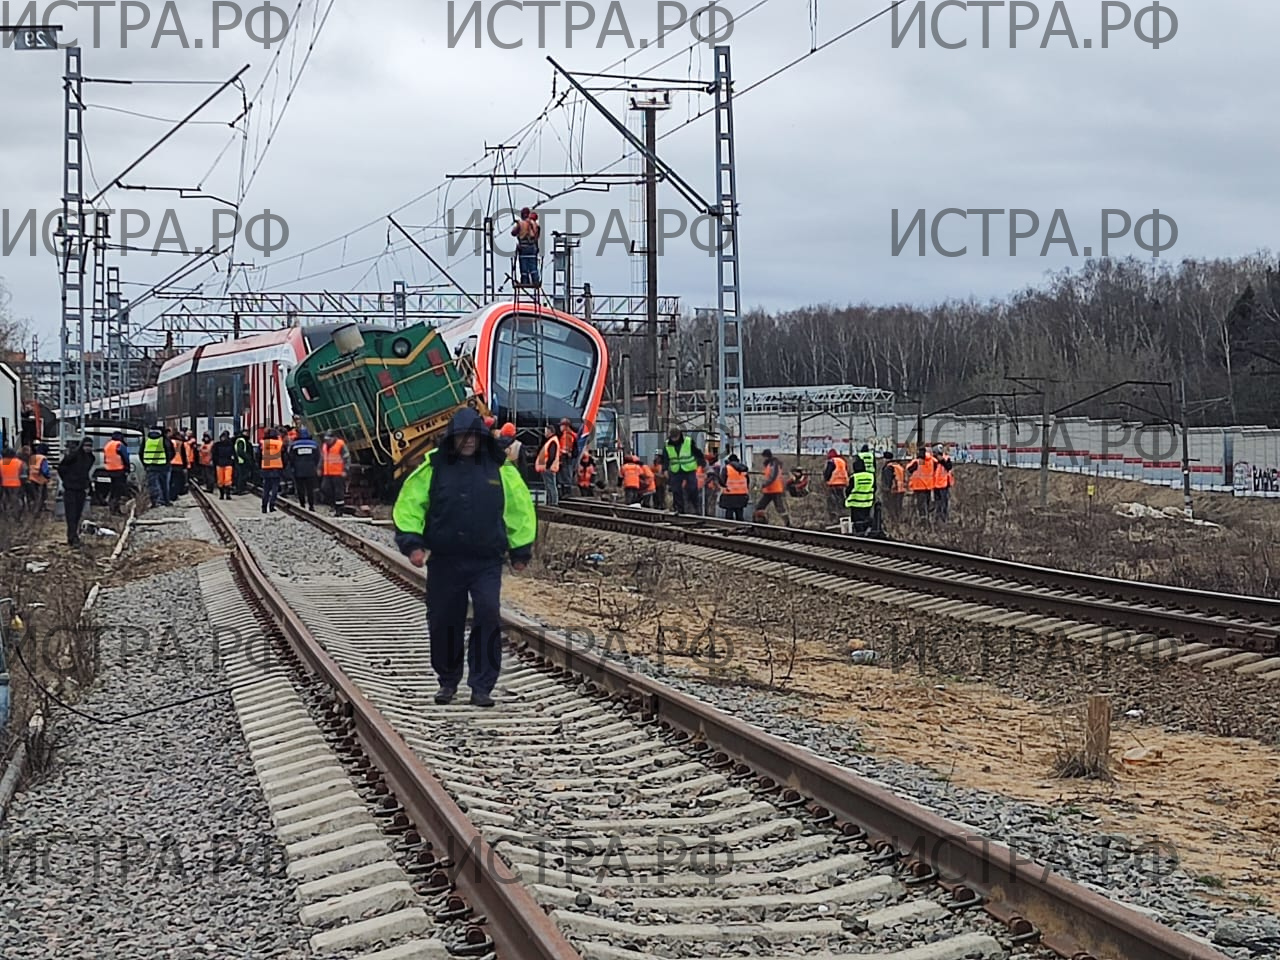 Поезд и тепловоз столкнулись в районе станции Малиновка